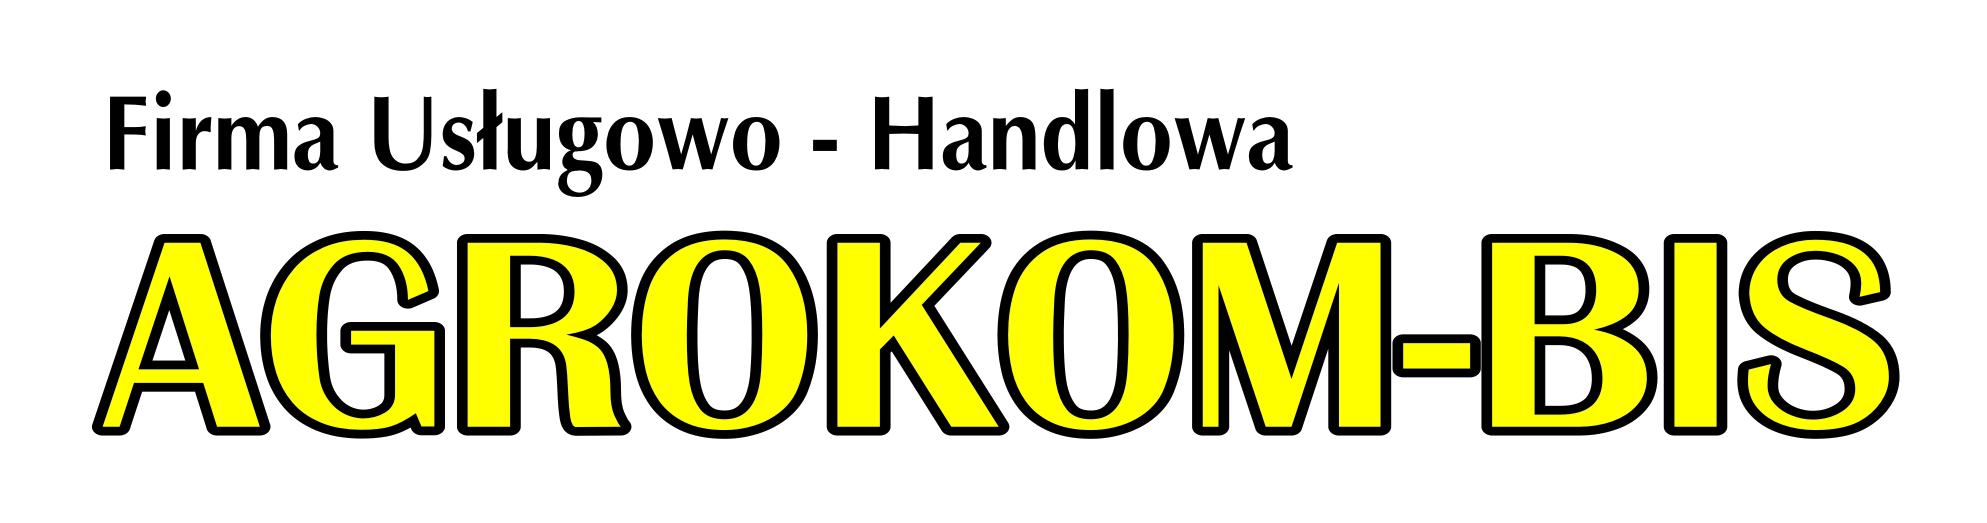 Logo AGROKOM-BIS Firma Usługowo-Handlowa